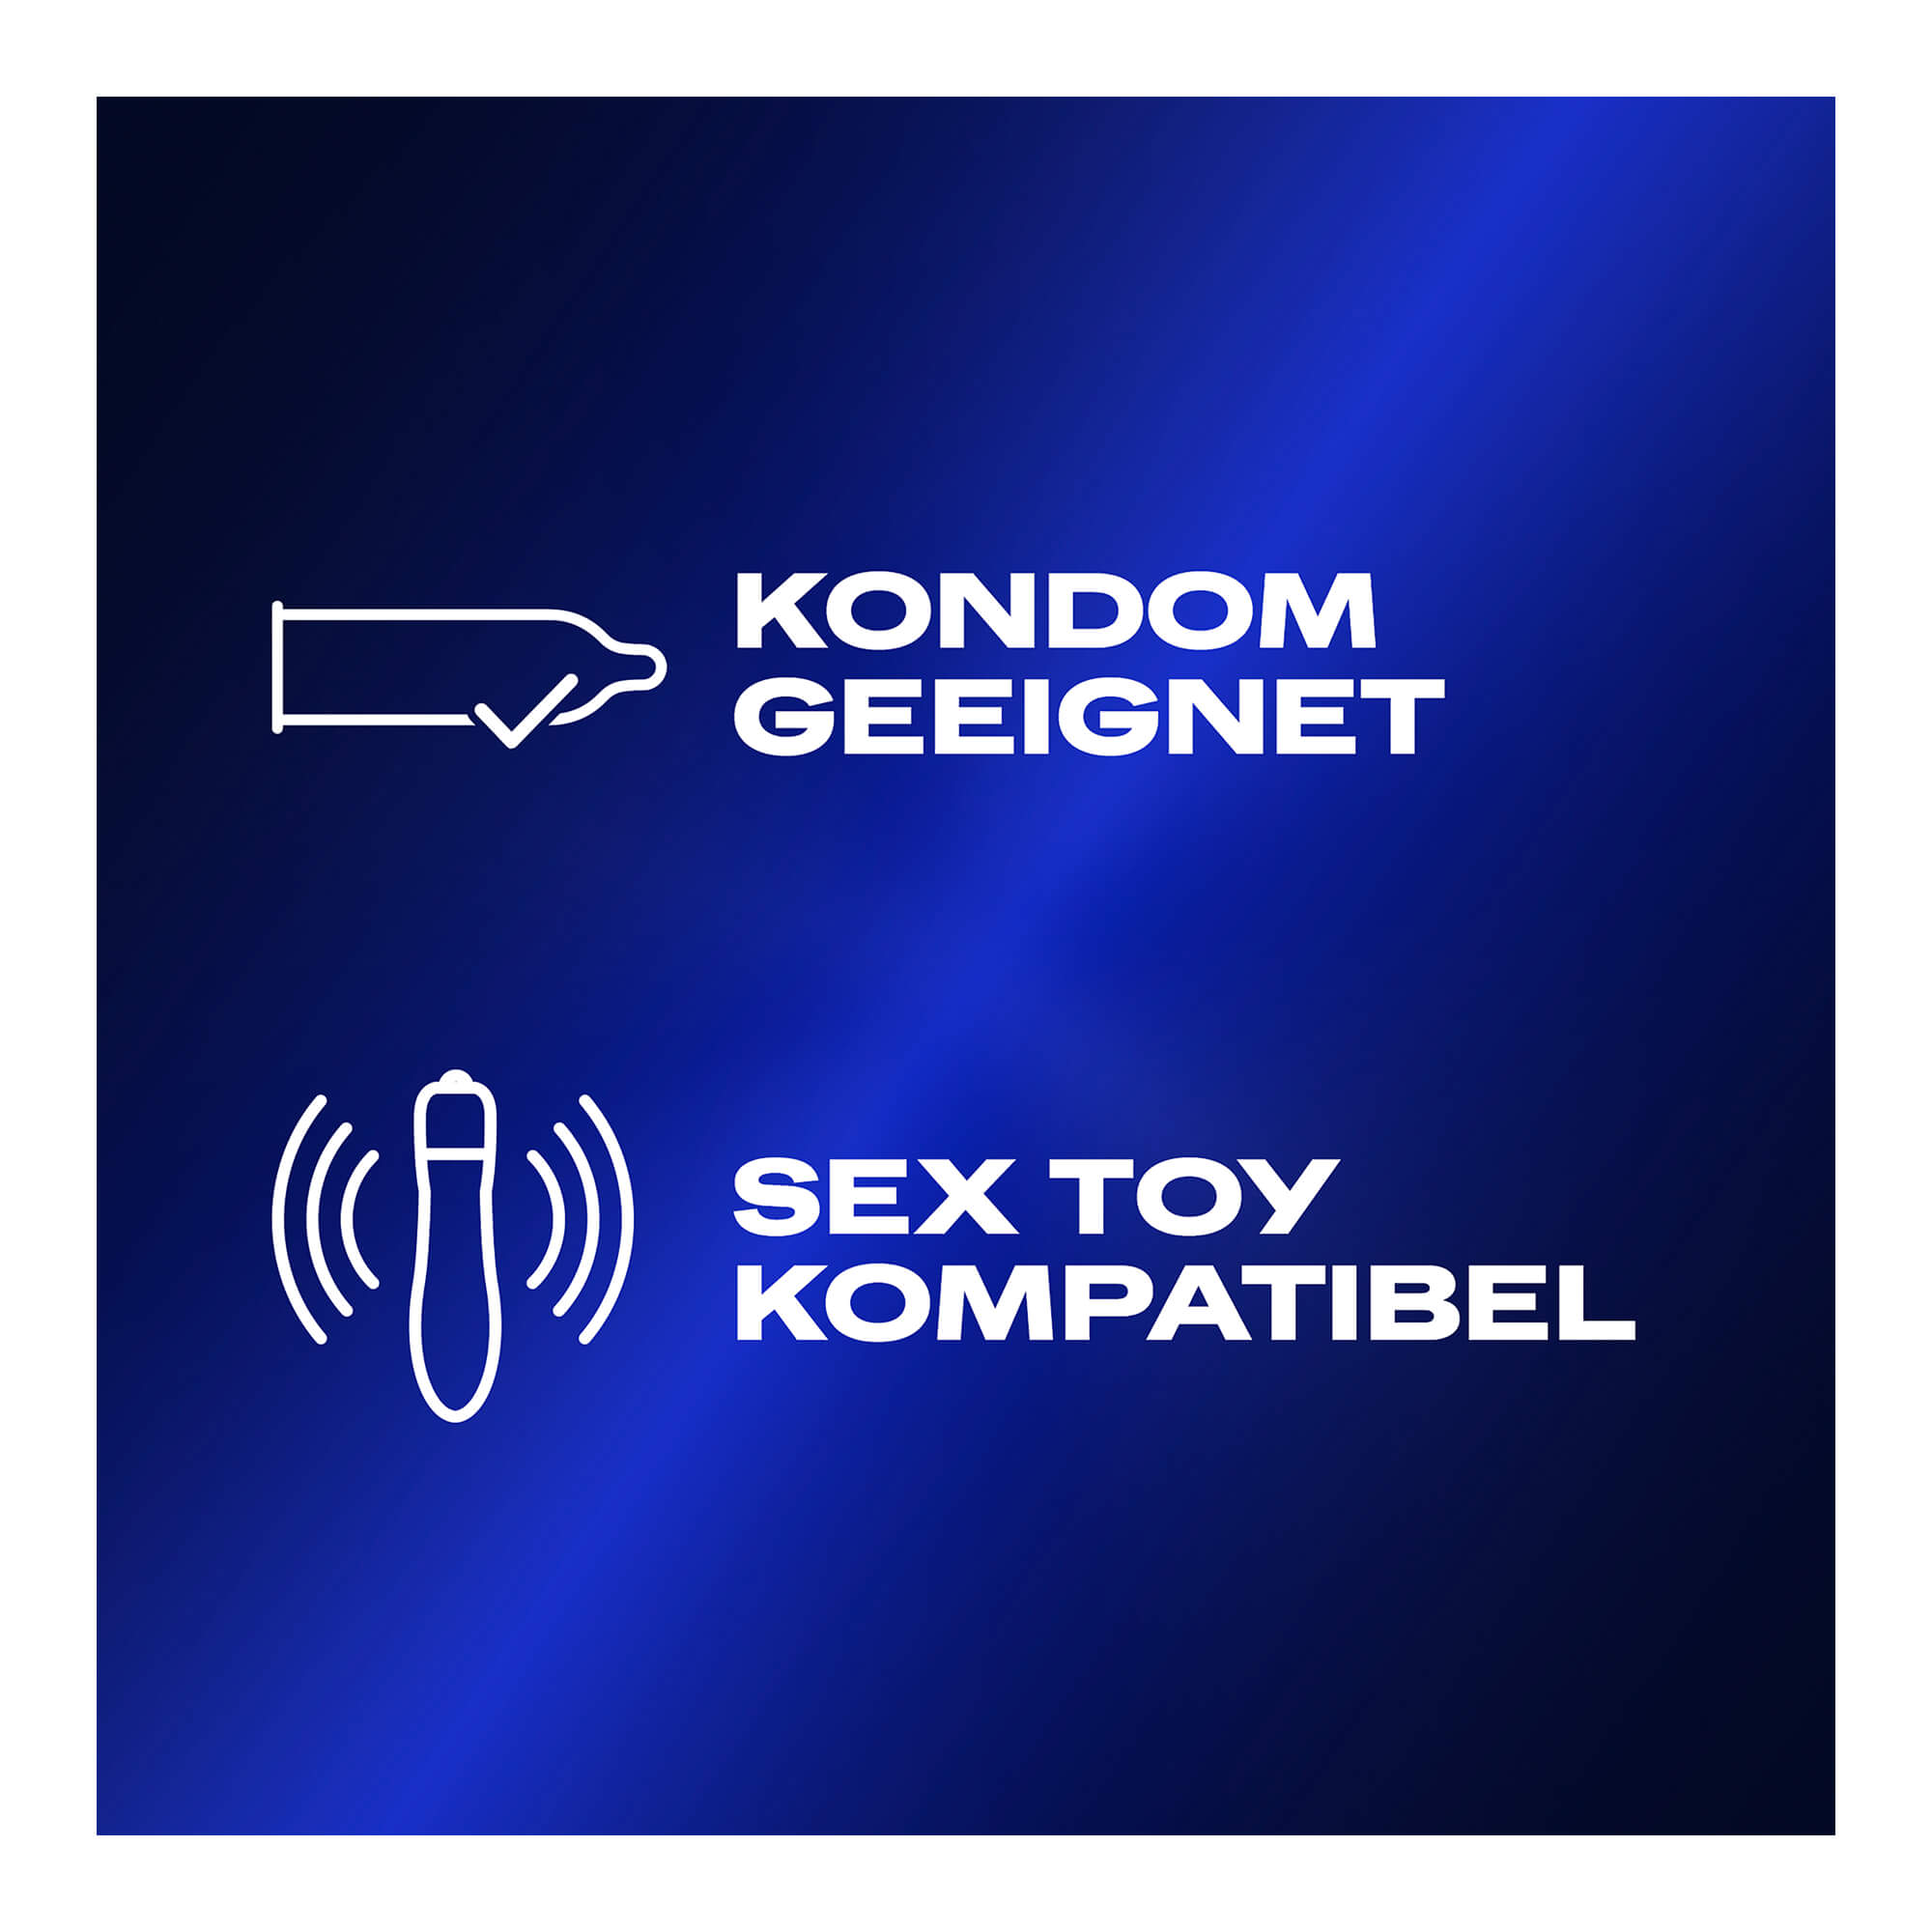 Durex Stimulationsgel ist Kondom und Sex Toy kompatibel